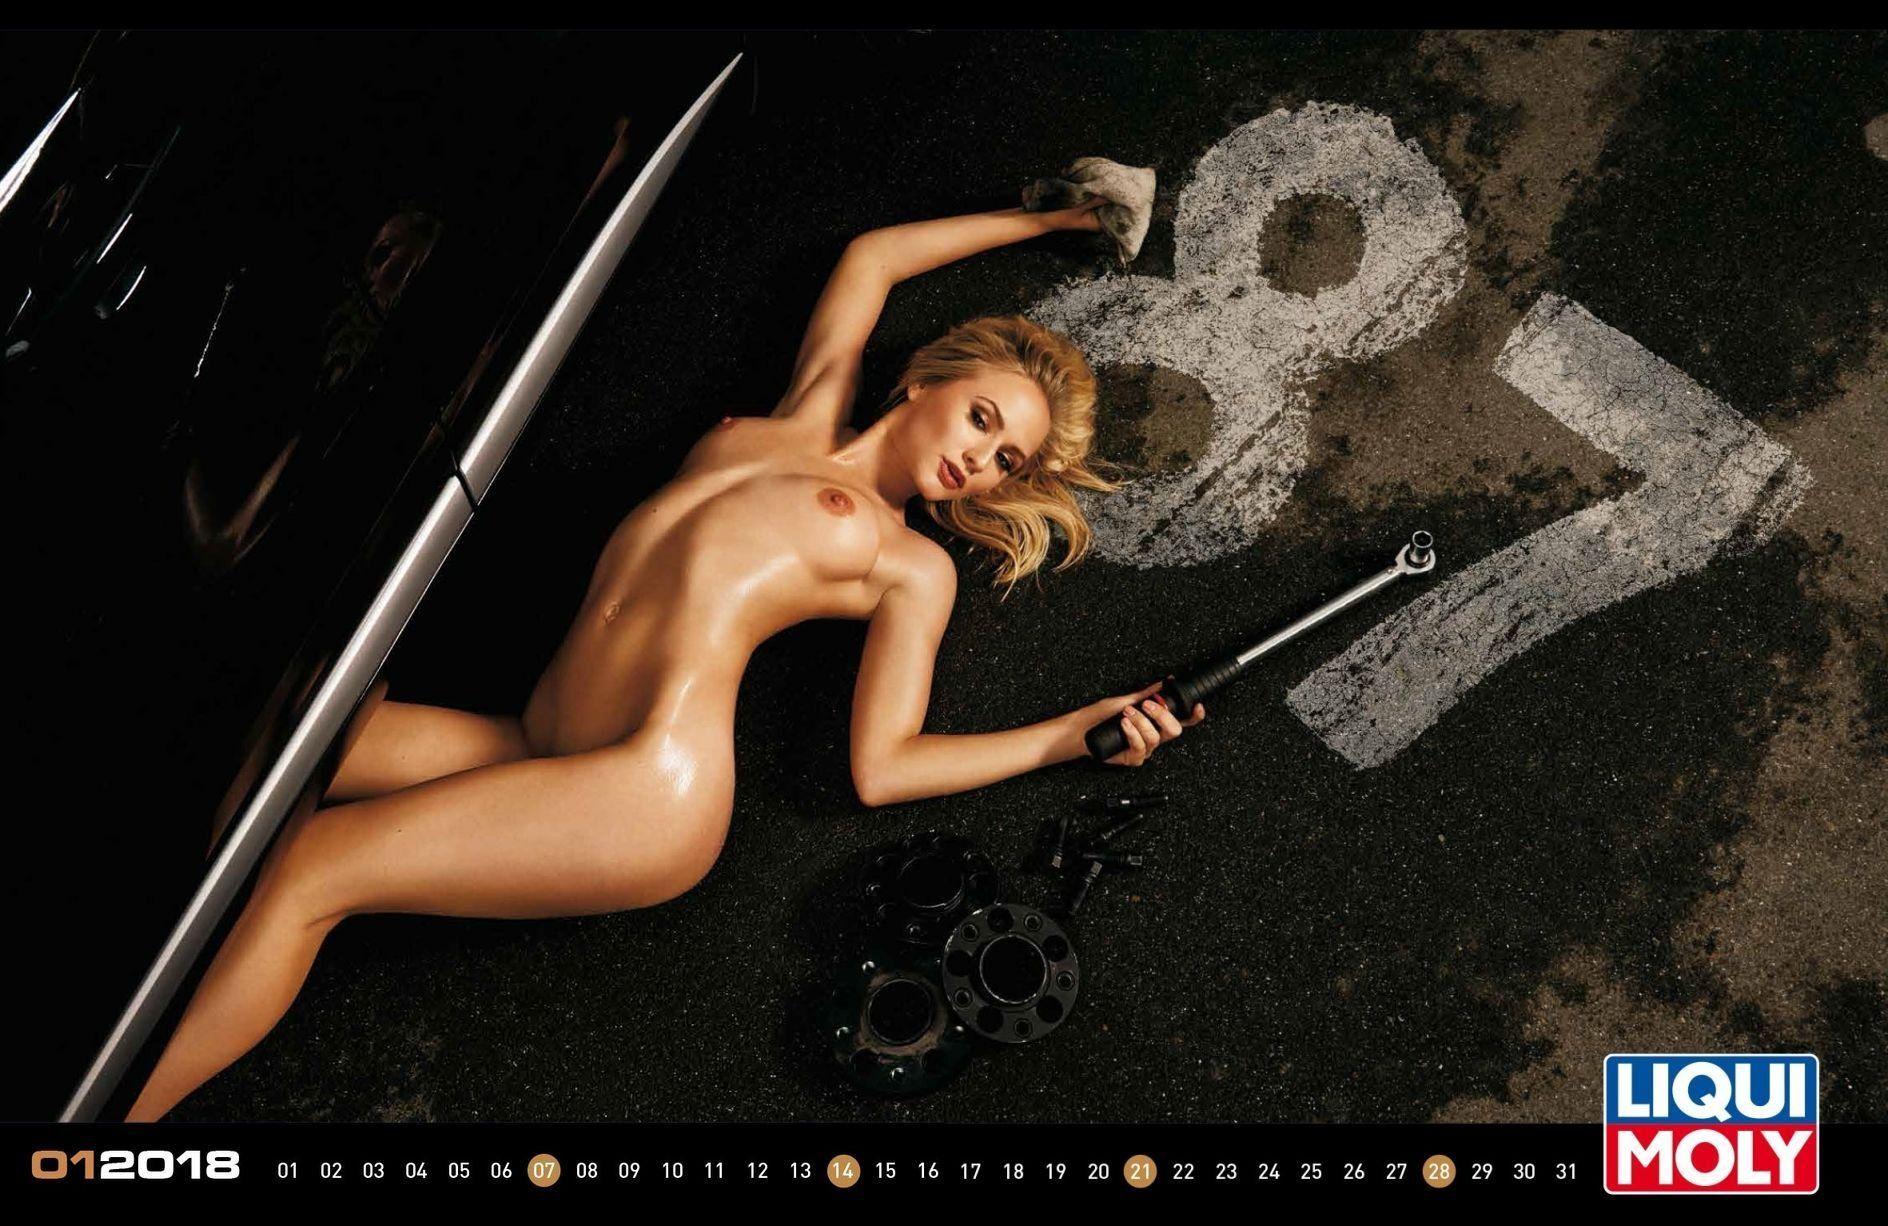 best of Chick Nude calendars biker